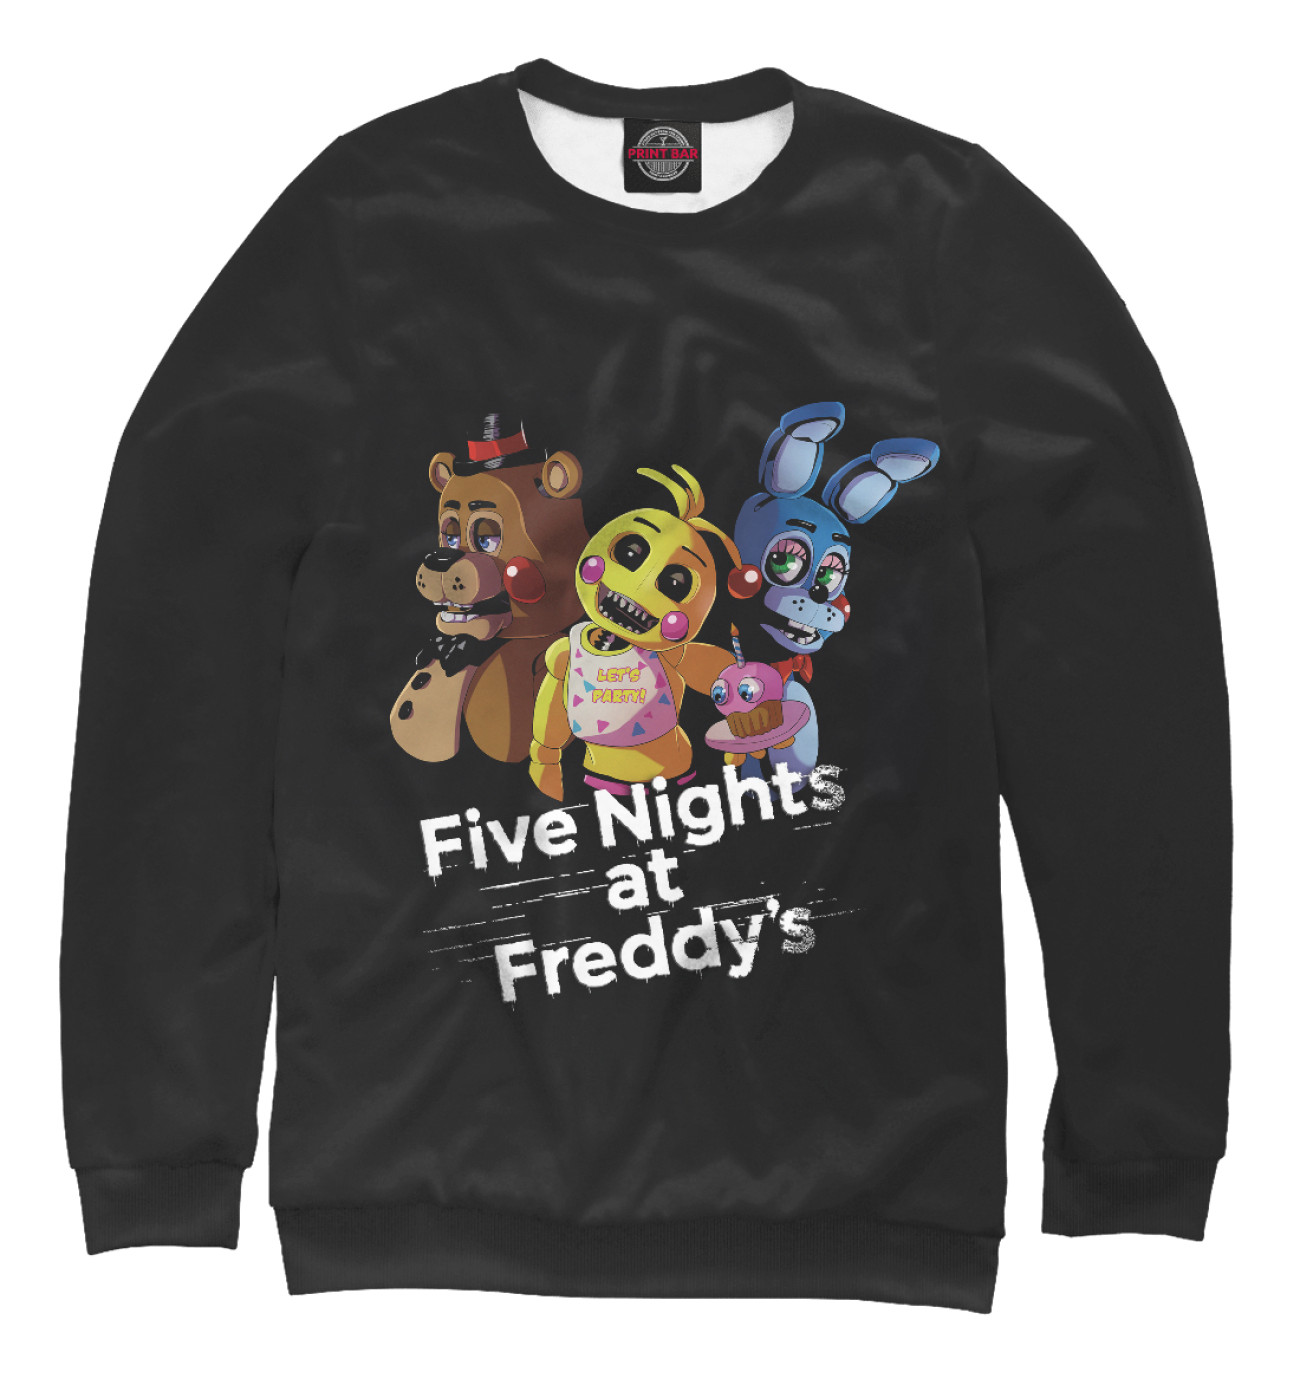 Мужской Свитшот Five Nights at Freddy's, артикул: FIV-899759-swi-2